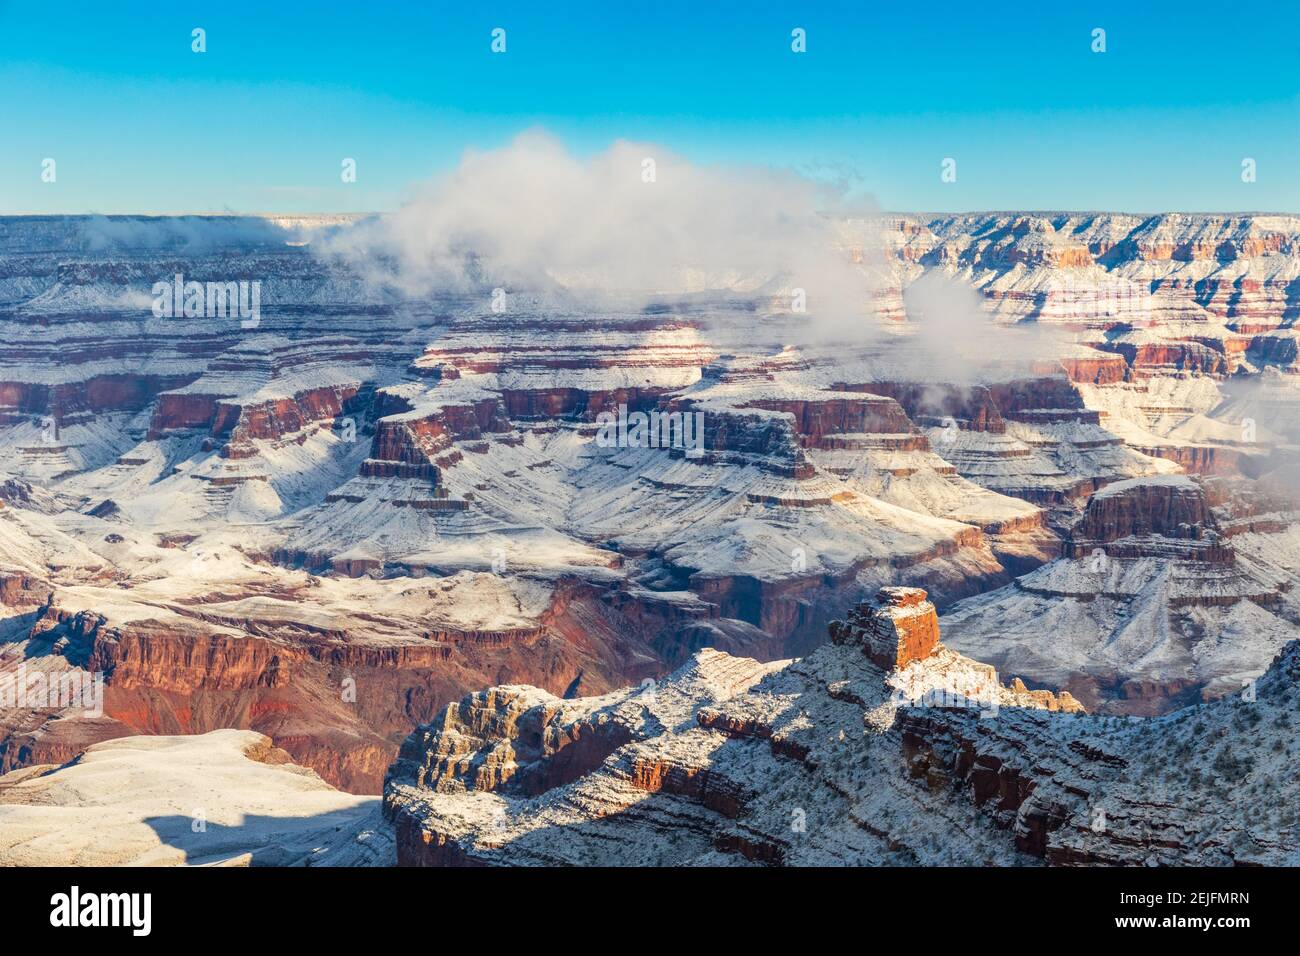 Grand Canyon al mattino, coperto di neve. Cielo blu; nuvole sul bordo del canyon. Foto Stock